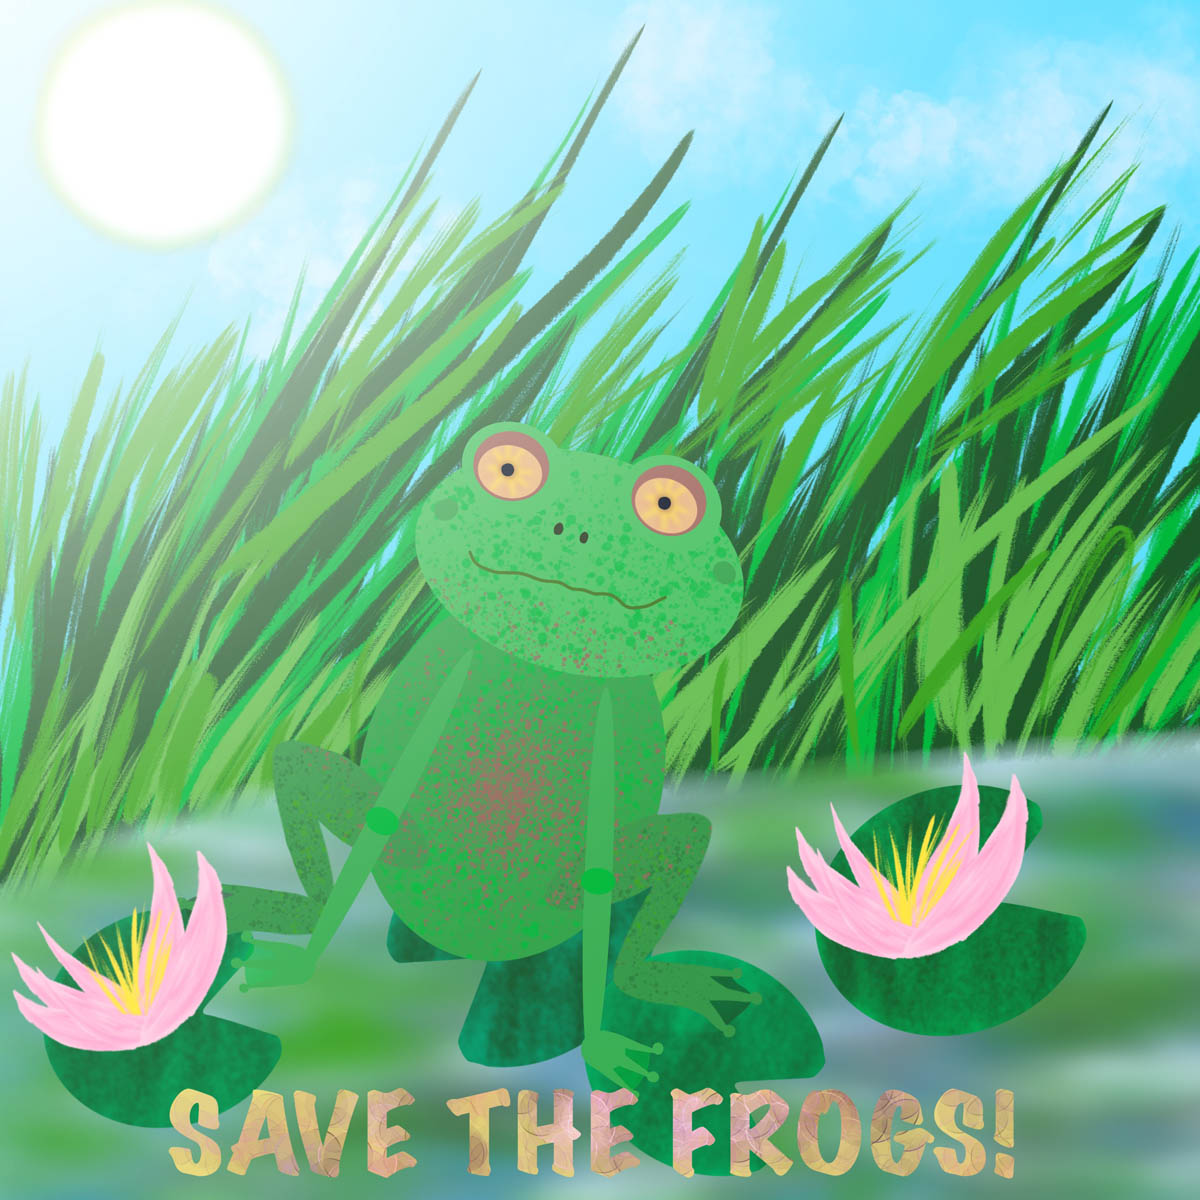 Zofia-Chmielewska-USA-2020-save-the-frogs-art-contest